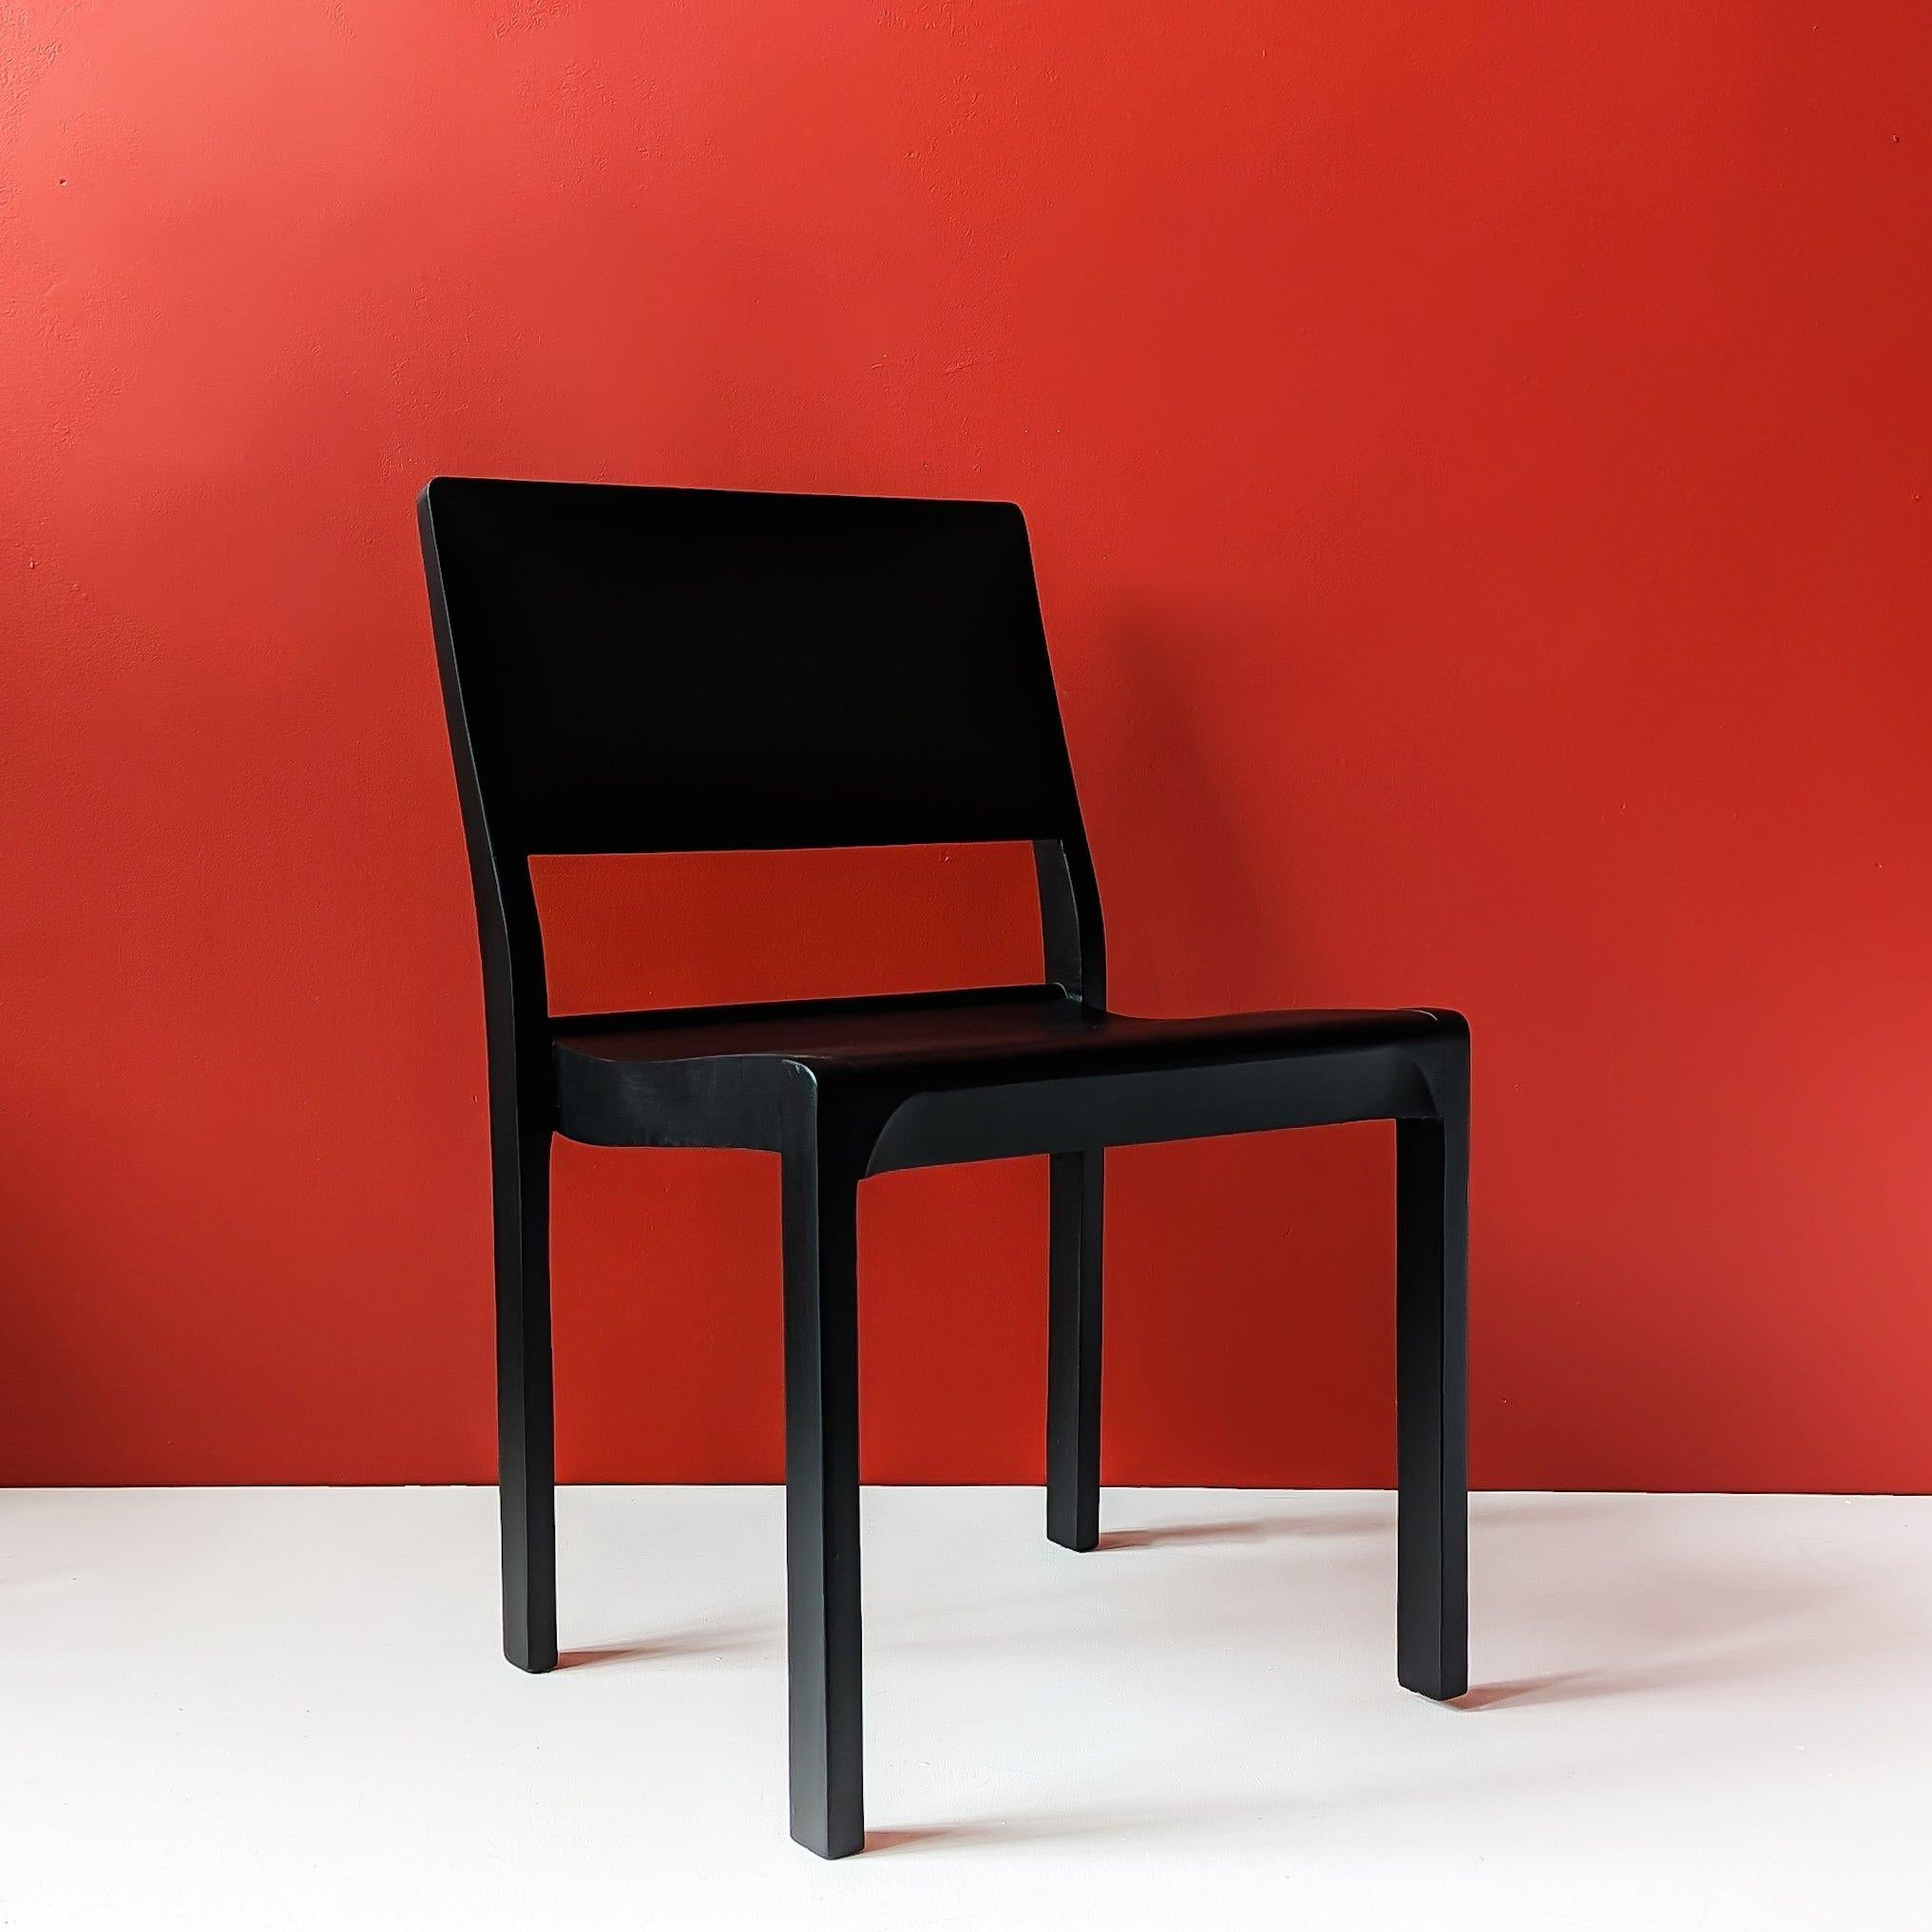 La chaise 611 , conçue par Alvar Aalto en 1929, est une chaise d'auditorium empilable en bouleau massif, également connue sous le nom de 